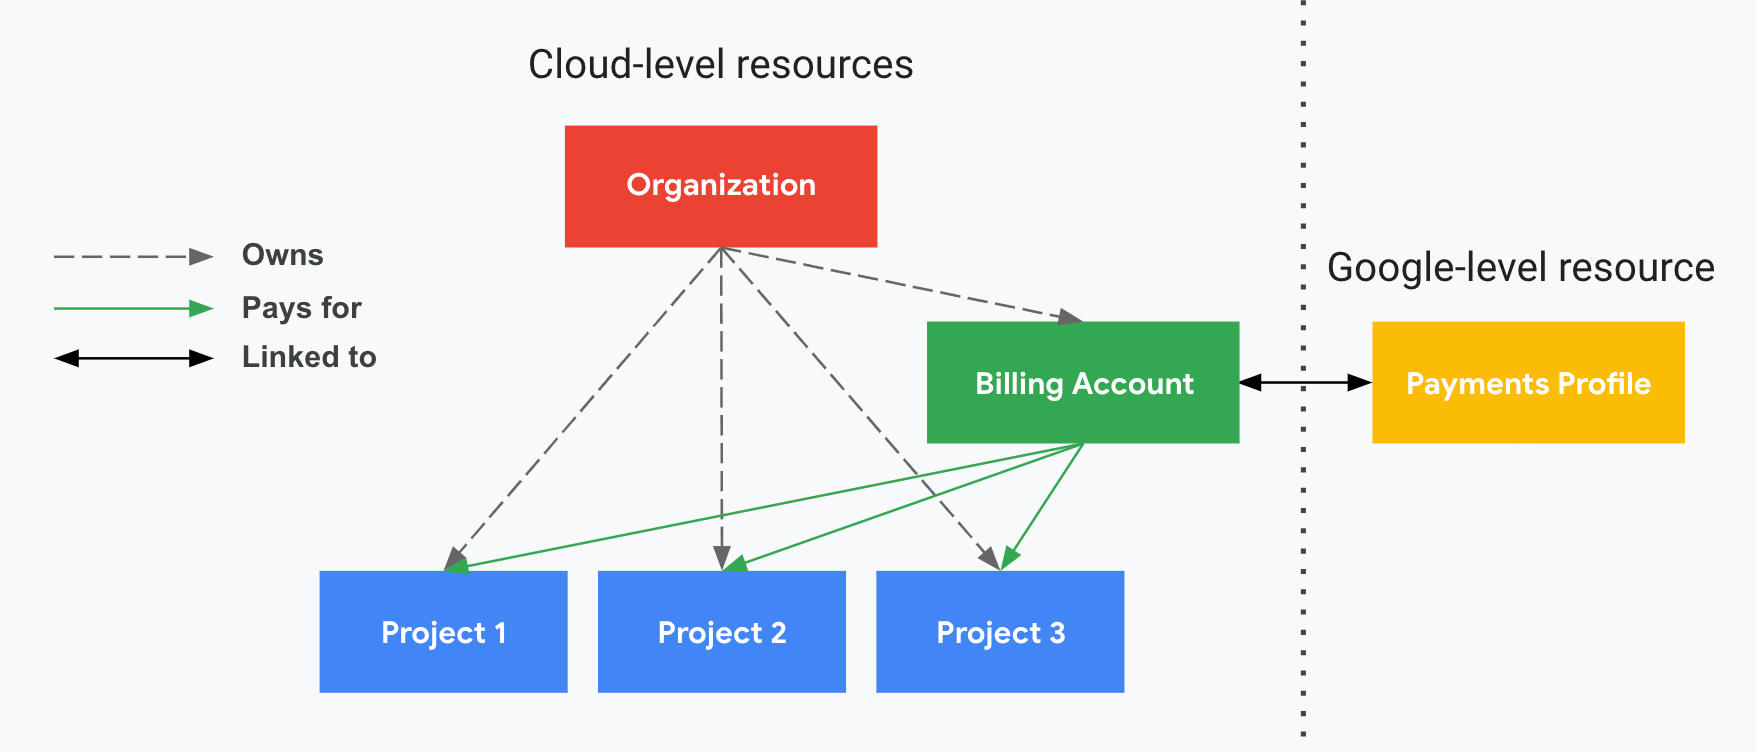 Descrive la relazione tra i progetti e l&#39;account di fatturazione Cloud,
         l&#39;organizzazione e il tuo profilo pagamenti Google. Programmi di una parte
         le risorse a livello di Google Cloud (organizzazione,
         account di fatturazione Cloud e progetti associati) e l&#39;altro
         divisa da una linea tratteggiata verticale, mostra il livello
         risorsa (un profilo pagamenti Google). I tuoi progetti sono pagati da
         il tuo account di fatturazione Cloud, collegato a un
         Profilo pagamenti Google. L&#39;organizzazione controlla la proprietà
         l&#39;account di fatturazione Cloud utilizzando IAM.